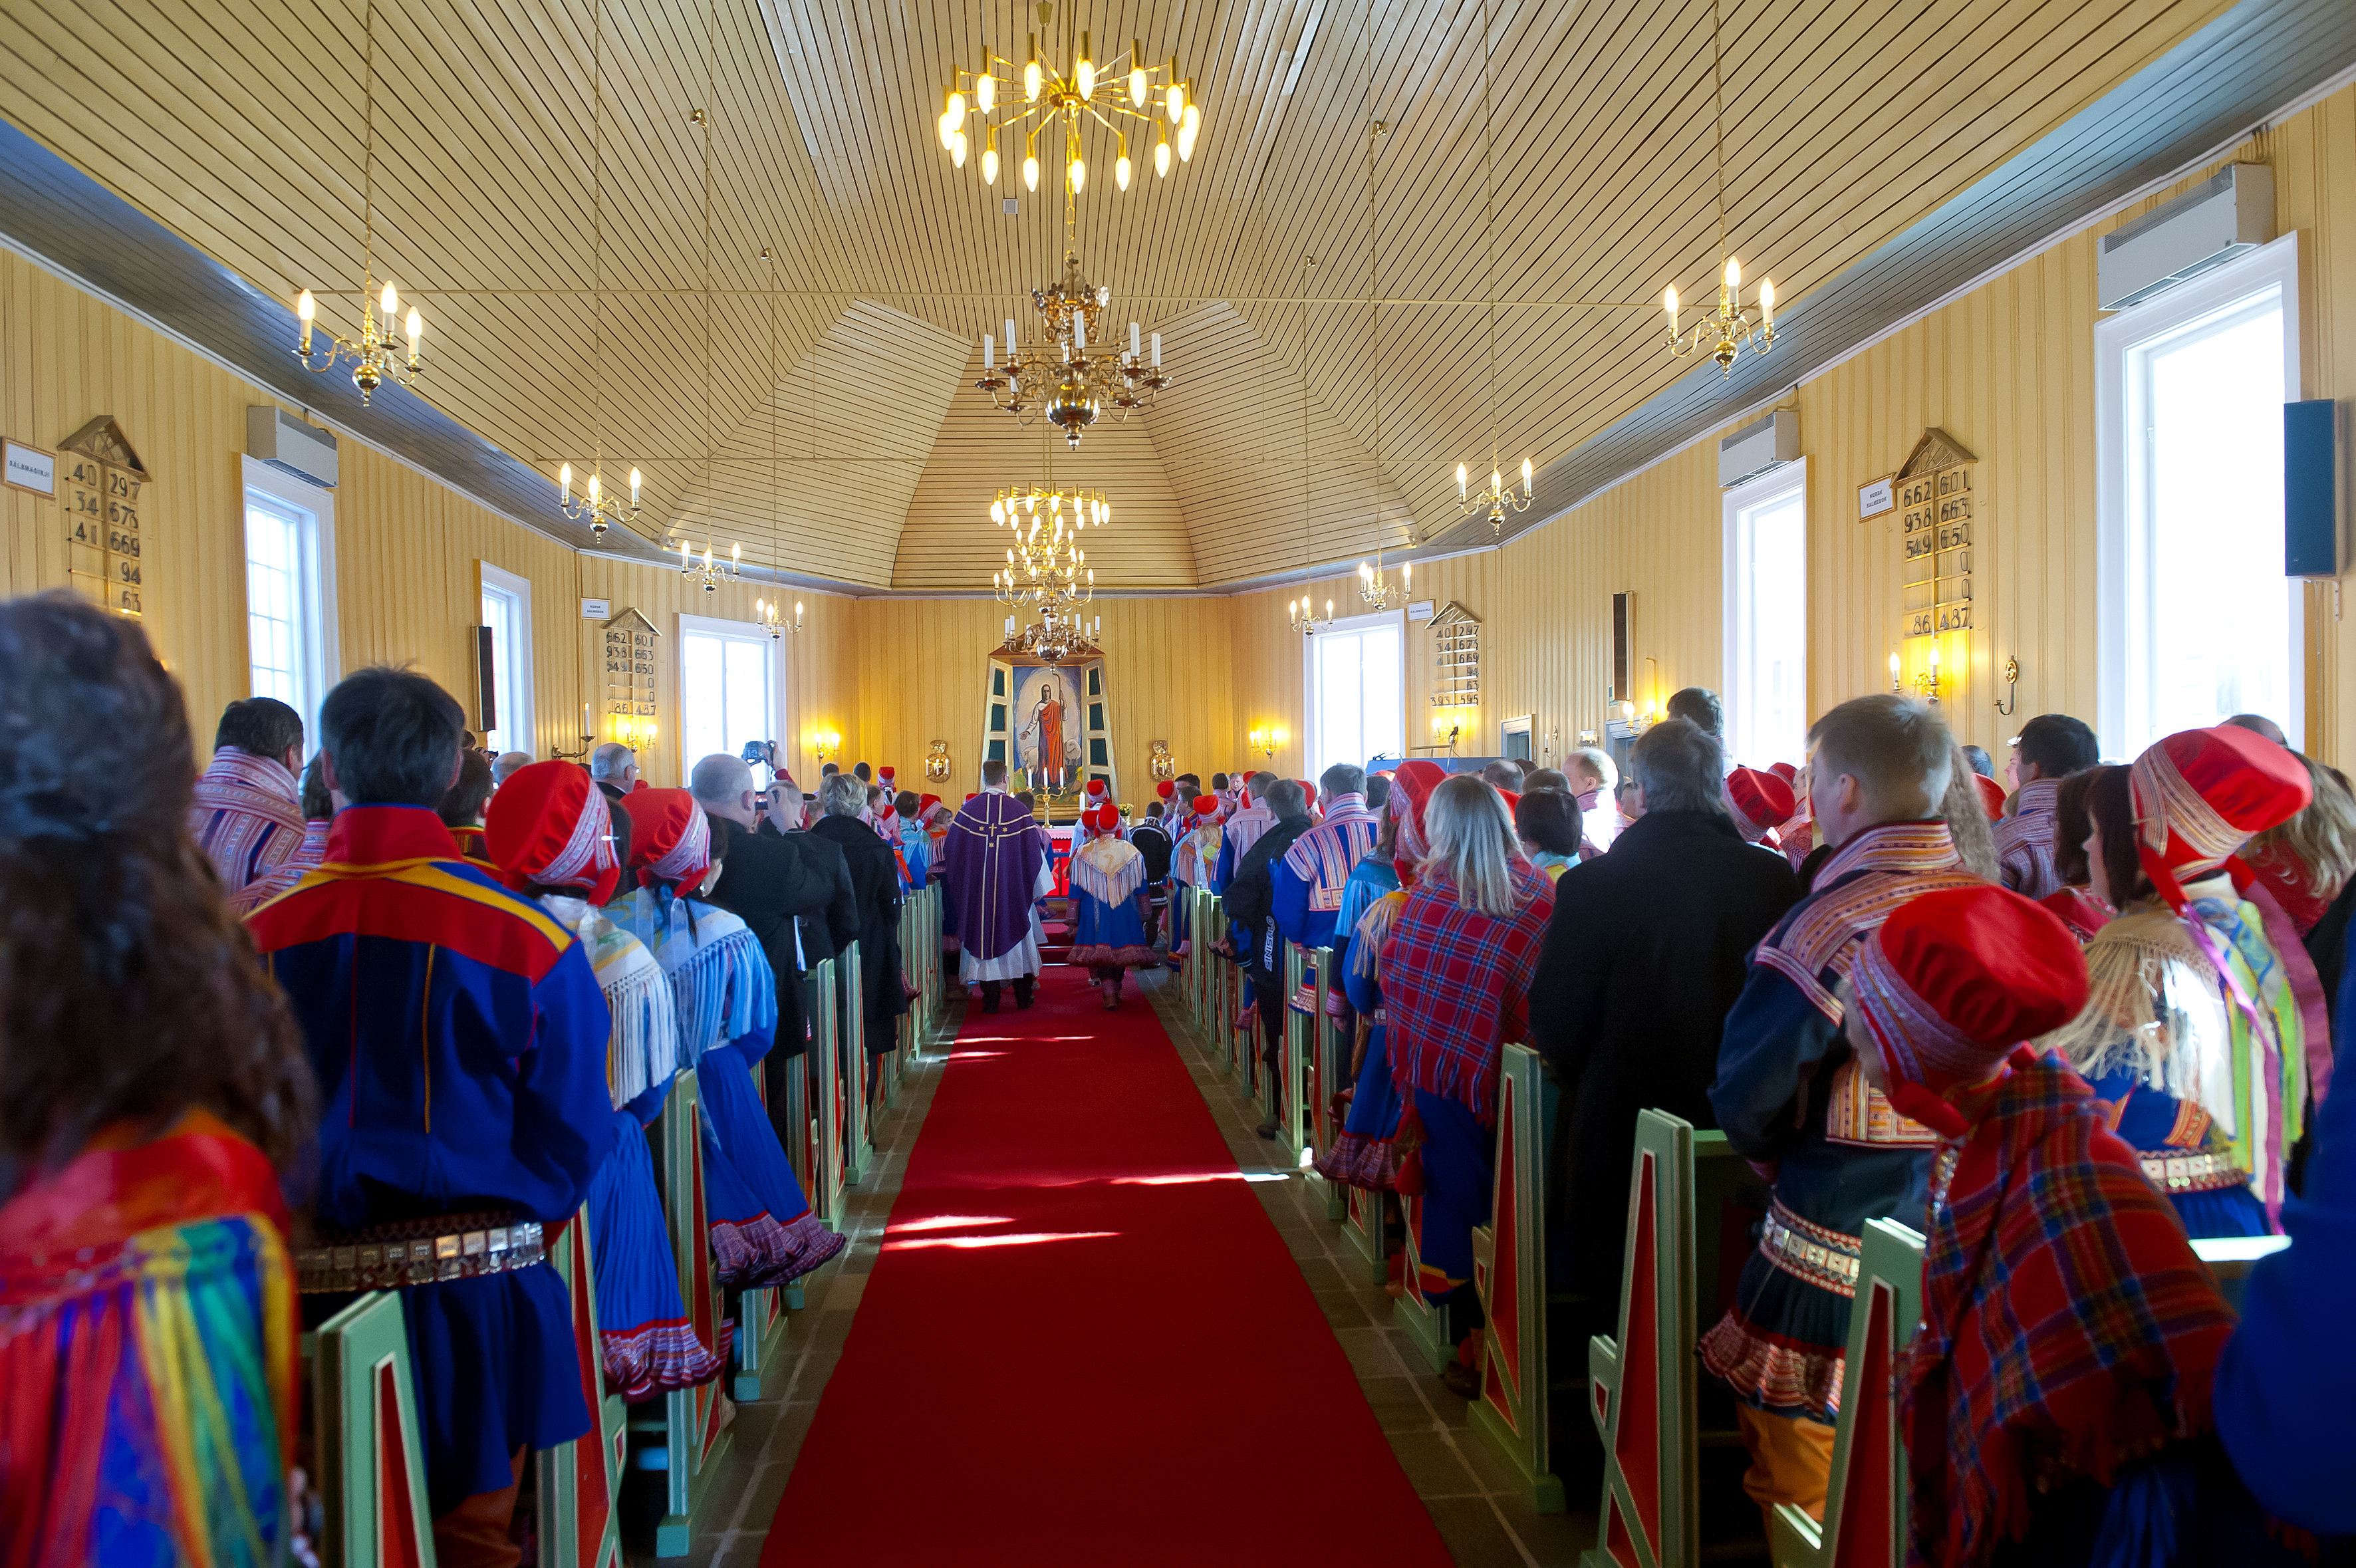 Hele kirken er fyldt, et utroligt smukt skue med så mange samiske dragter. Der er kun plads til konfirmanderne og deres pårørende, så vi må nøjes med at følge med fra våbenhuset. Gudstjenesten tager meget lang tid, den foregår både på norsk og samisk. 